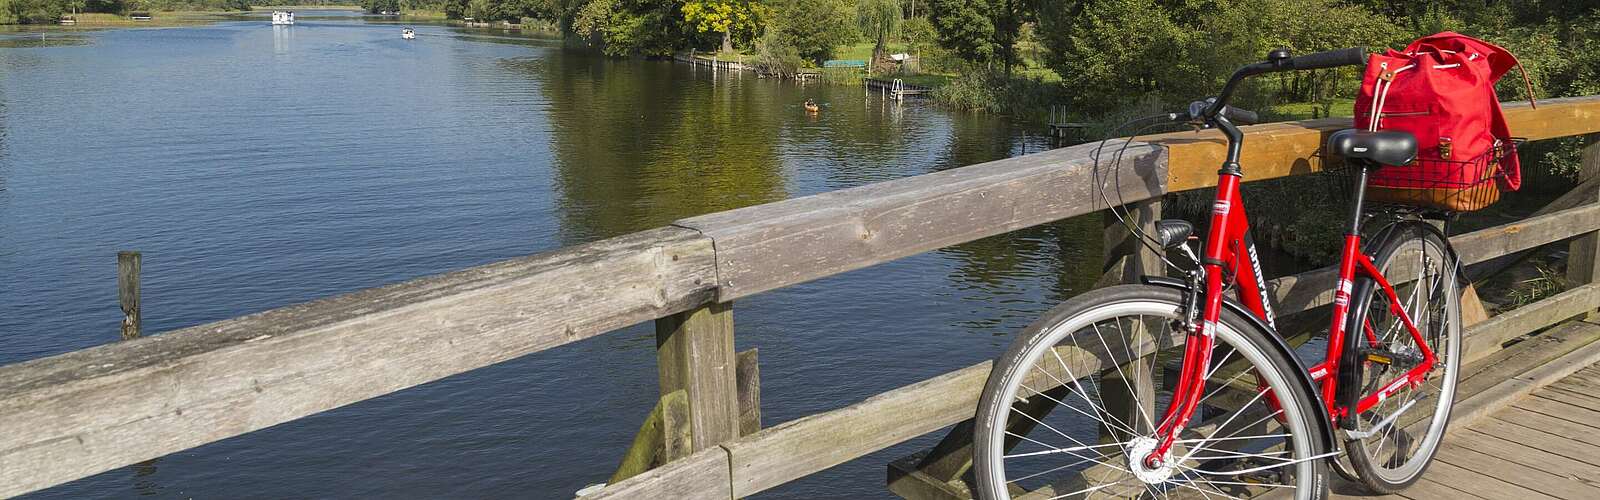 Fahrrad auf Brücke,
        
    

        Foto: TMB-Fotoarchiv/Steffen Lehmann